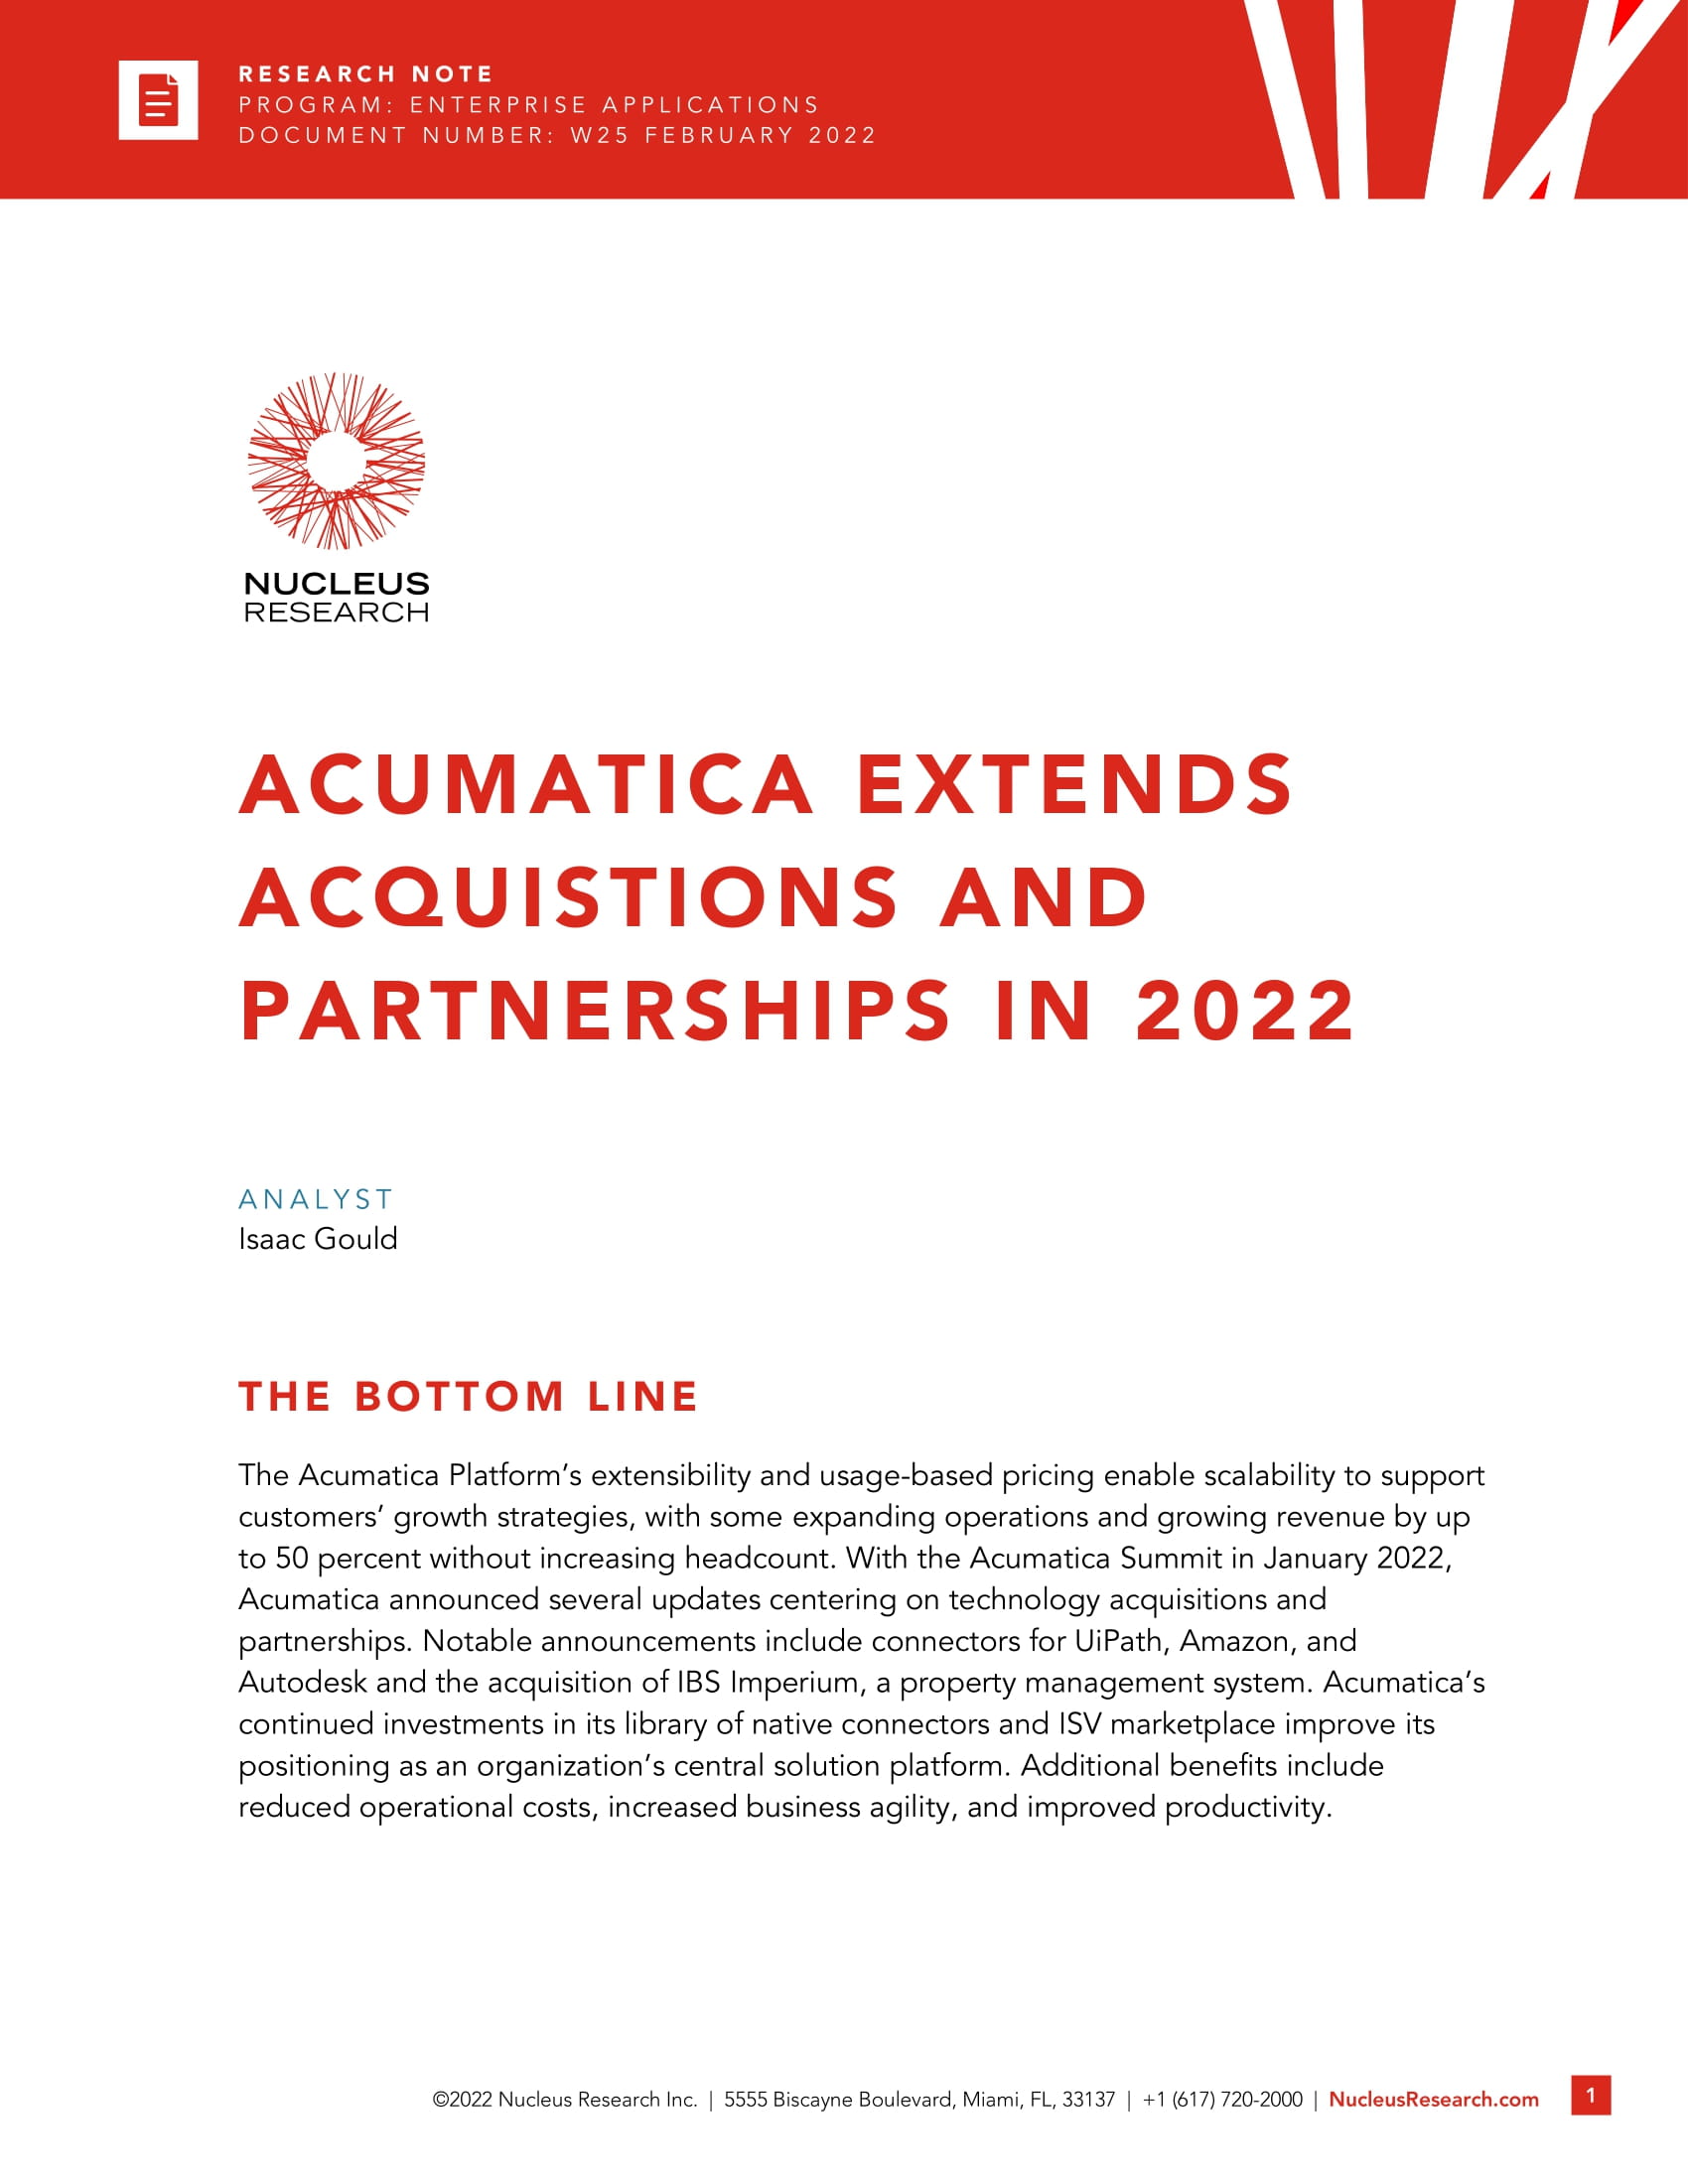 Tirer parti des nouvelles acquisitions et des nouveaux partenariats d'Acumatica 